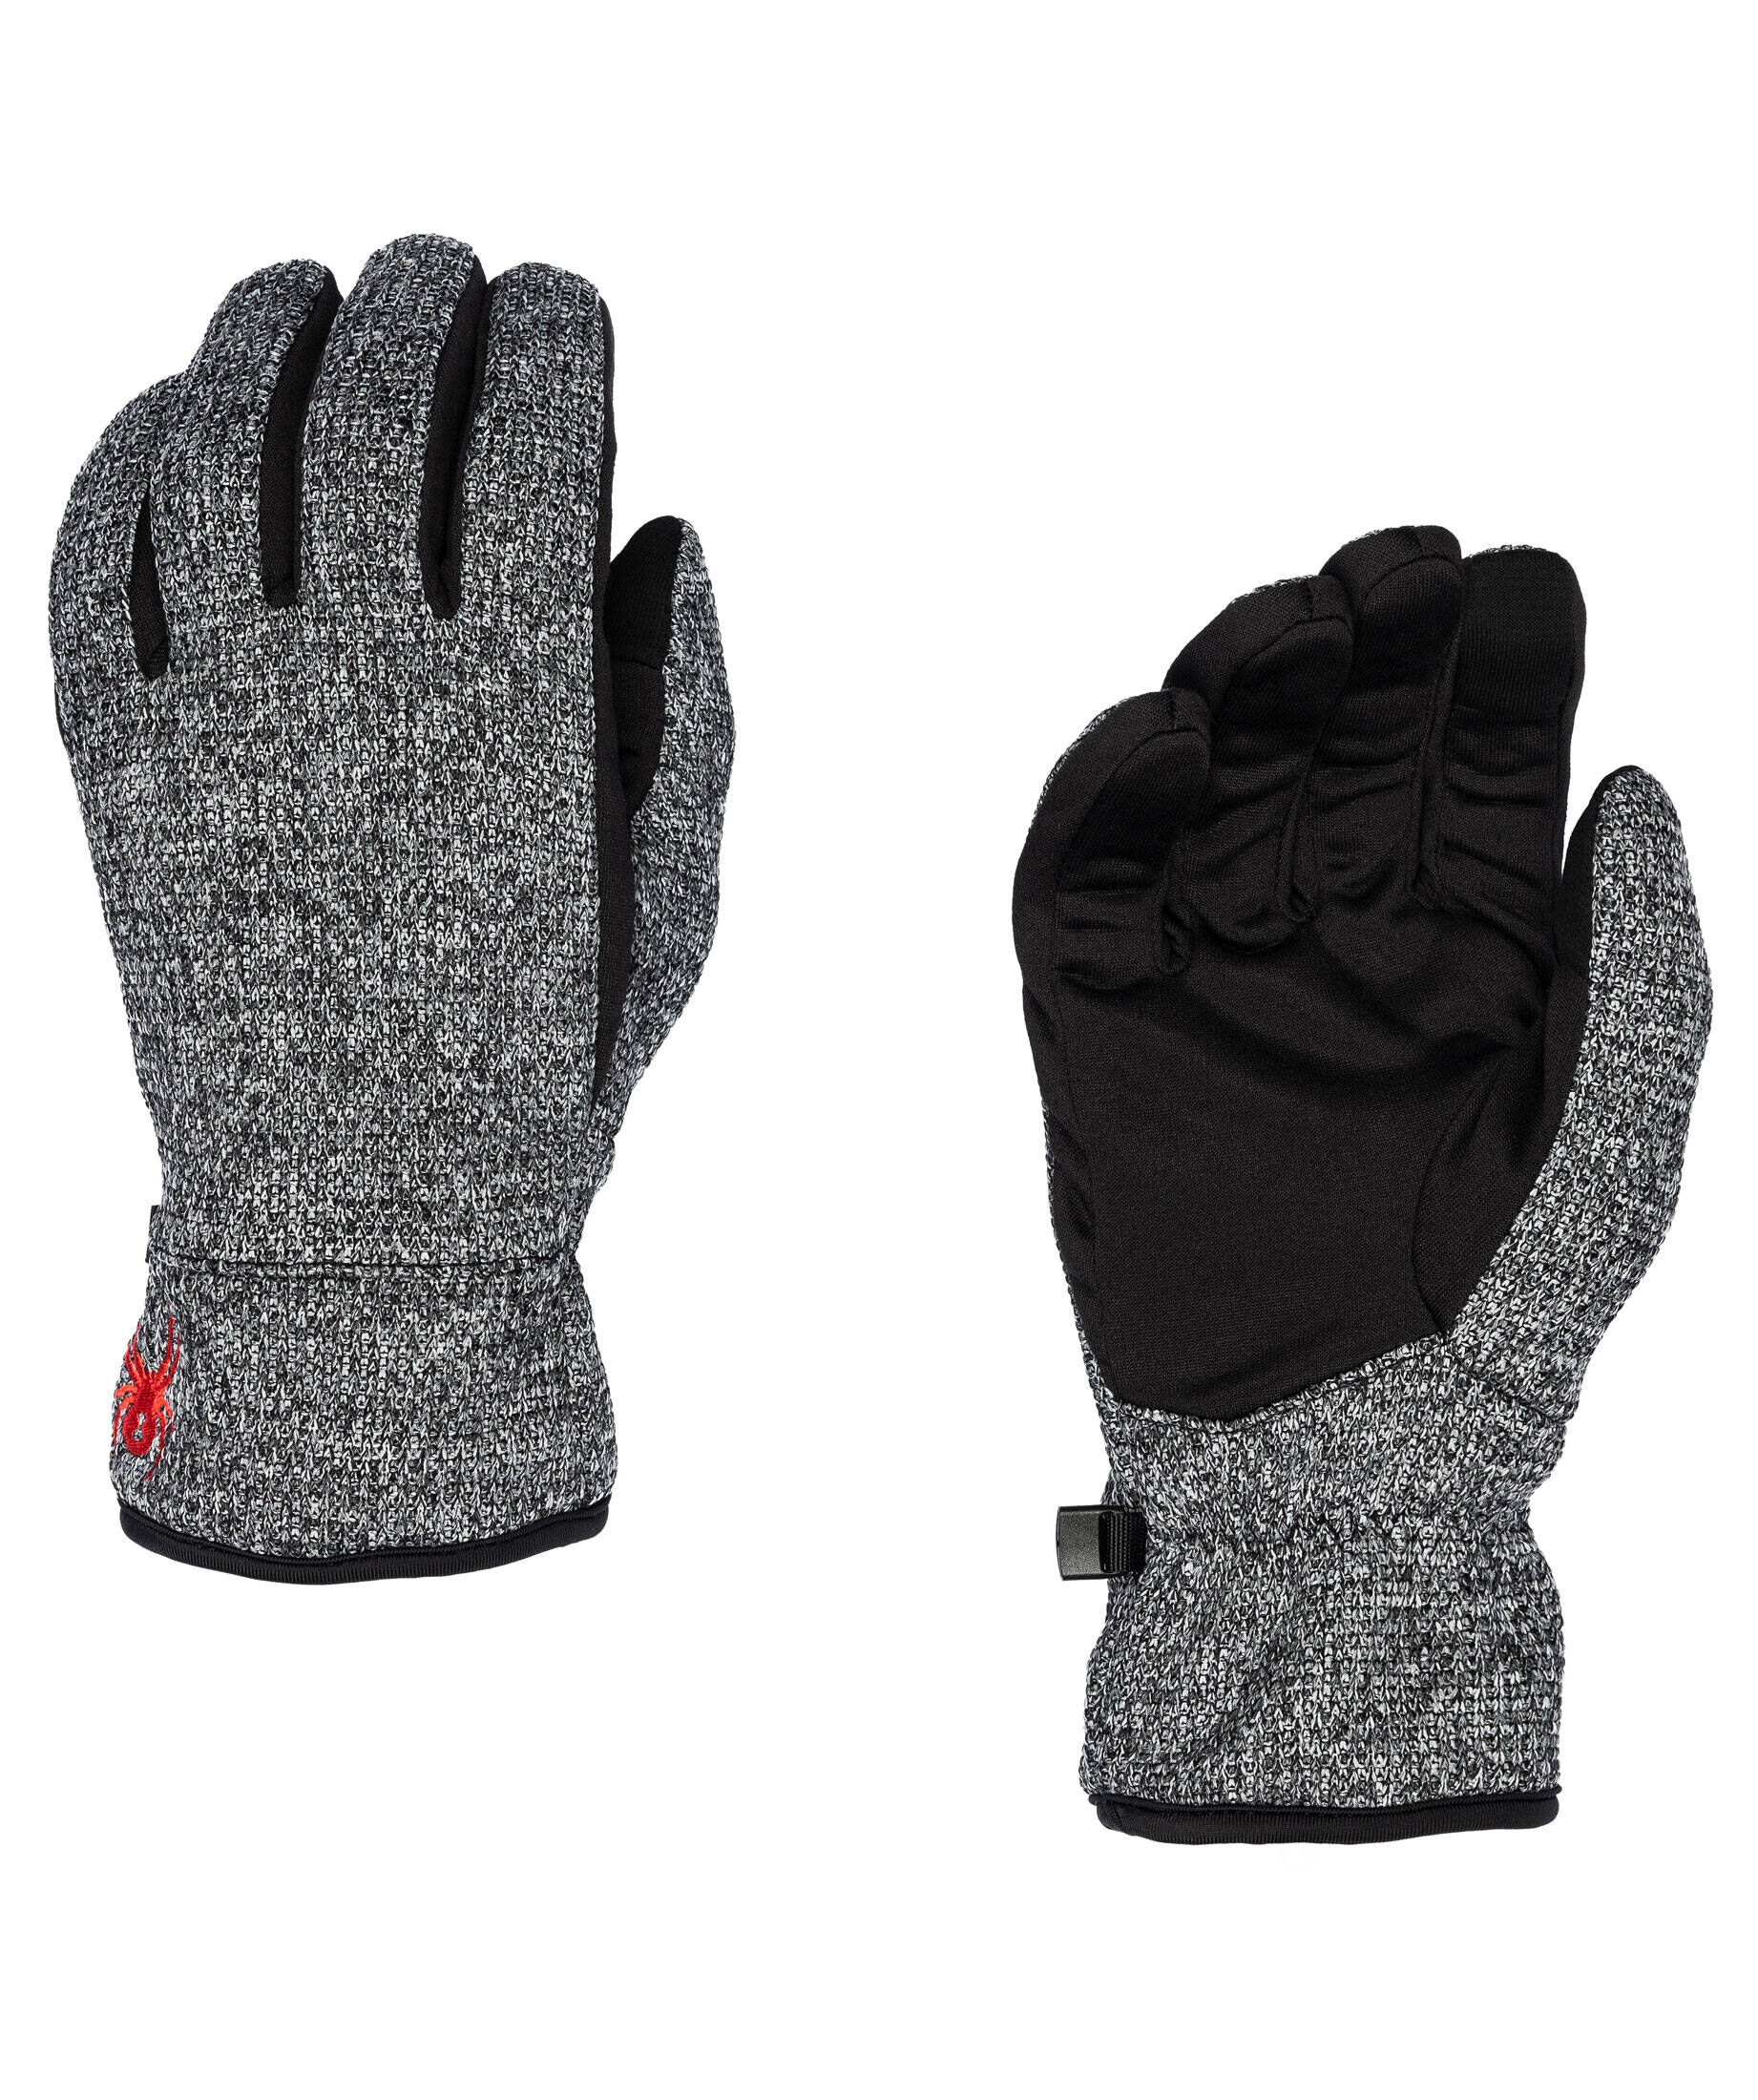 Spyder Herren Fleece Handschuh Bandit Stryke  Glove mit Touch grau schwarz 